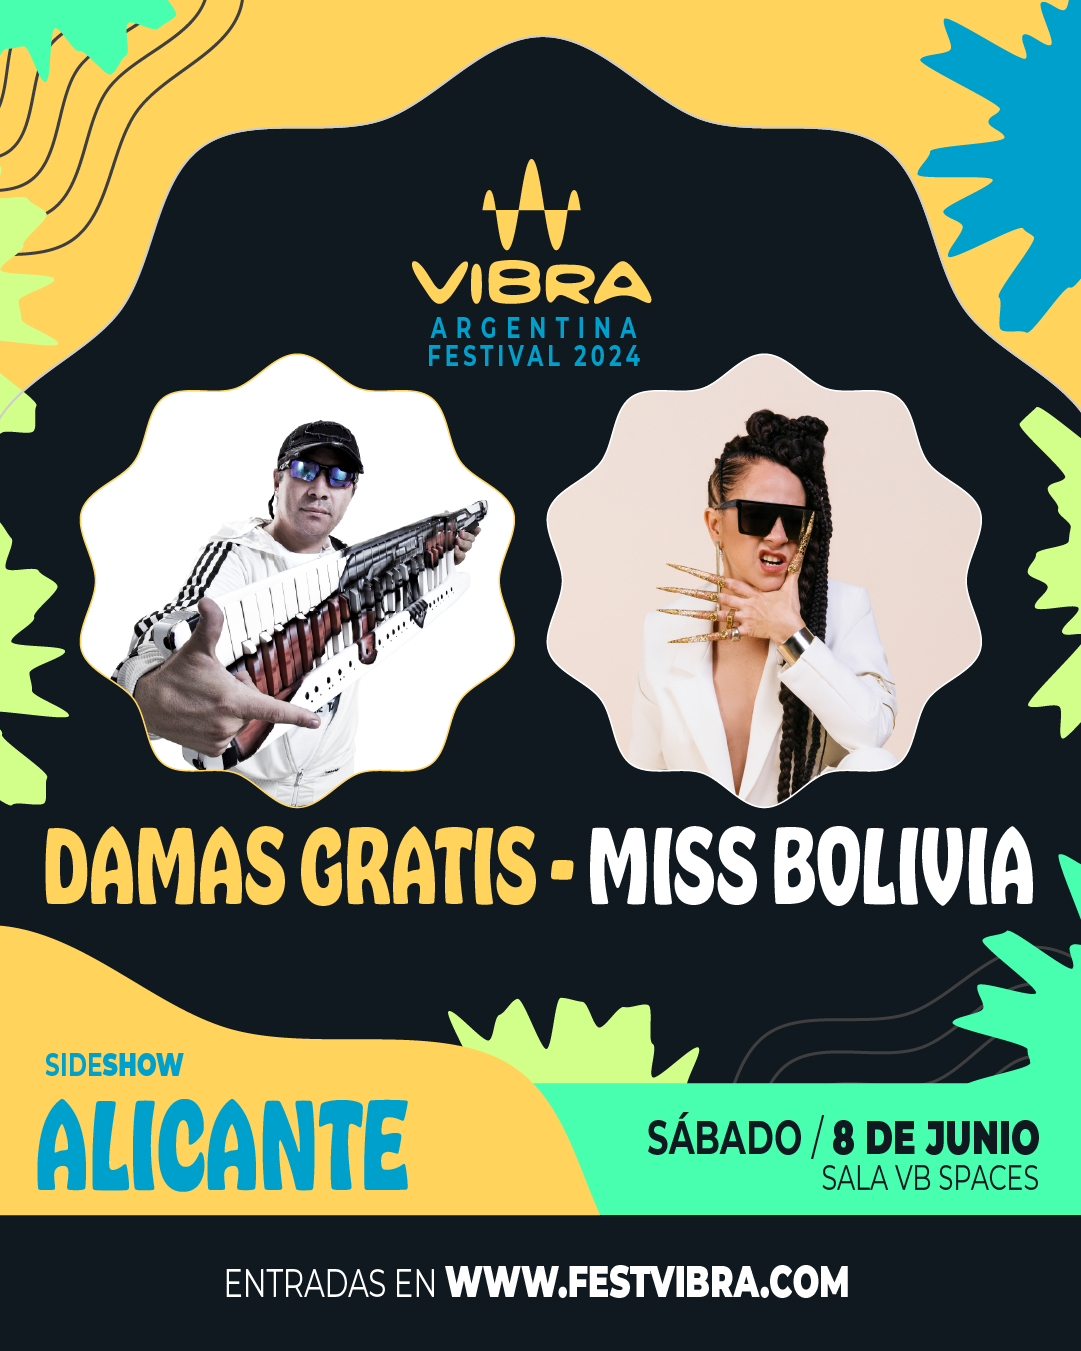 VIBRA ARGENTINA FESTIVAL 2024 en ALICANTE, sala VB Space, Sabado 8 Junio Damas Gratis y Miss Bolivia. Entradas y Info: www.festvibra.com